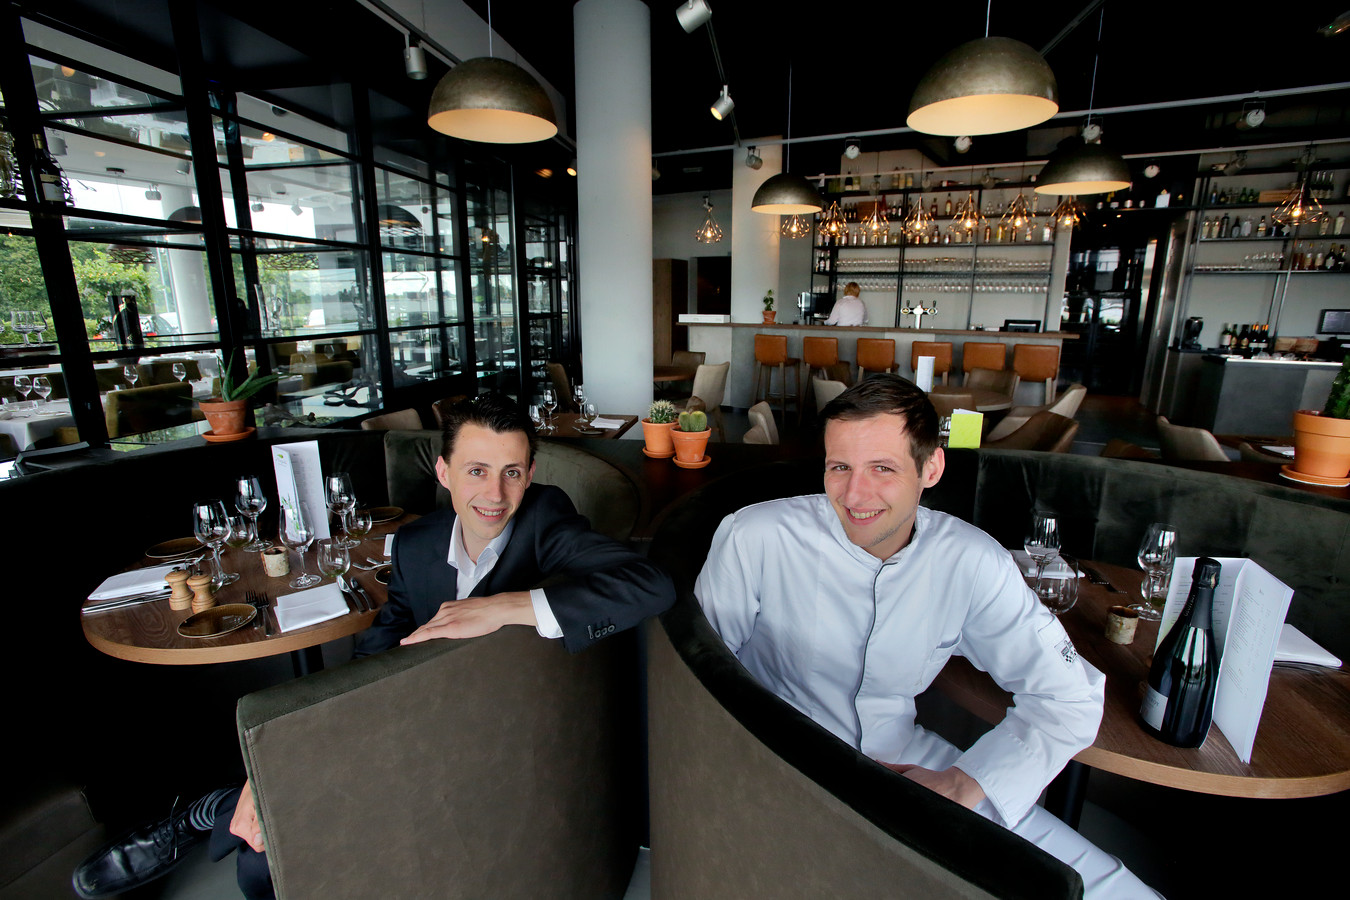 Restaurant De Ertepeller. Beeld uit het archief. Links Mark van den Berg, rechts chefkok Arjan Kuipers.